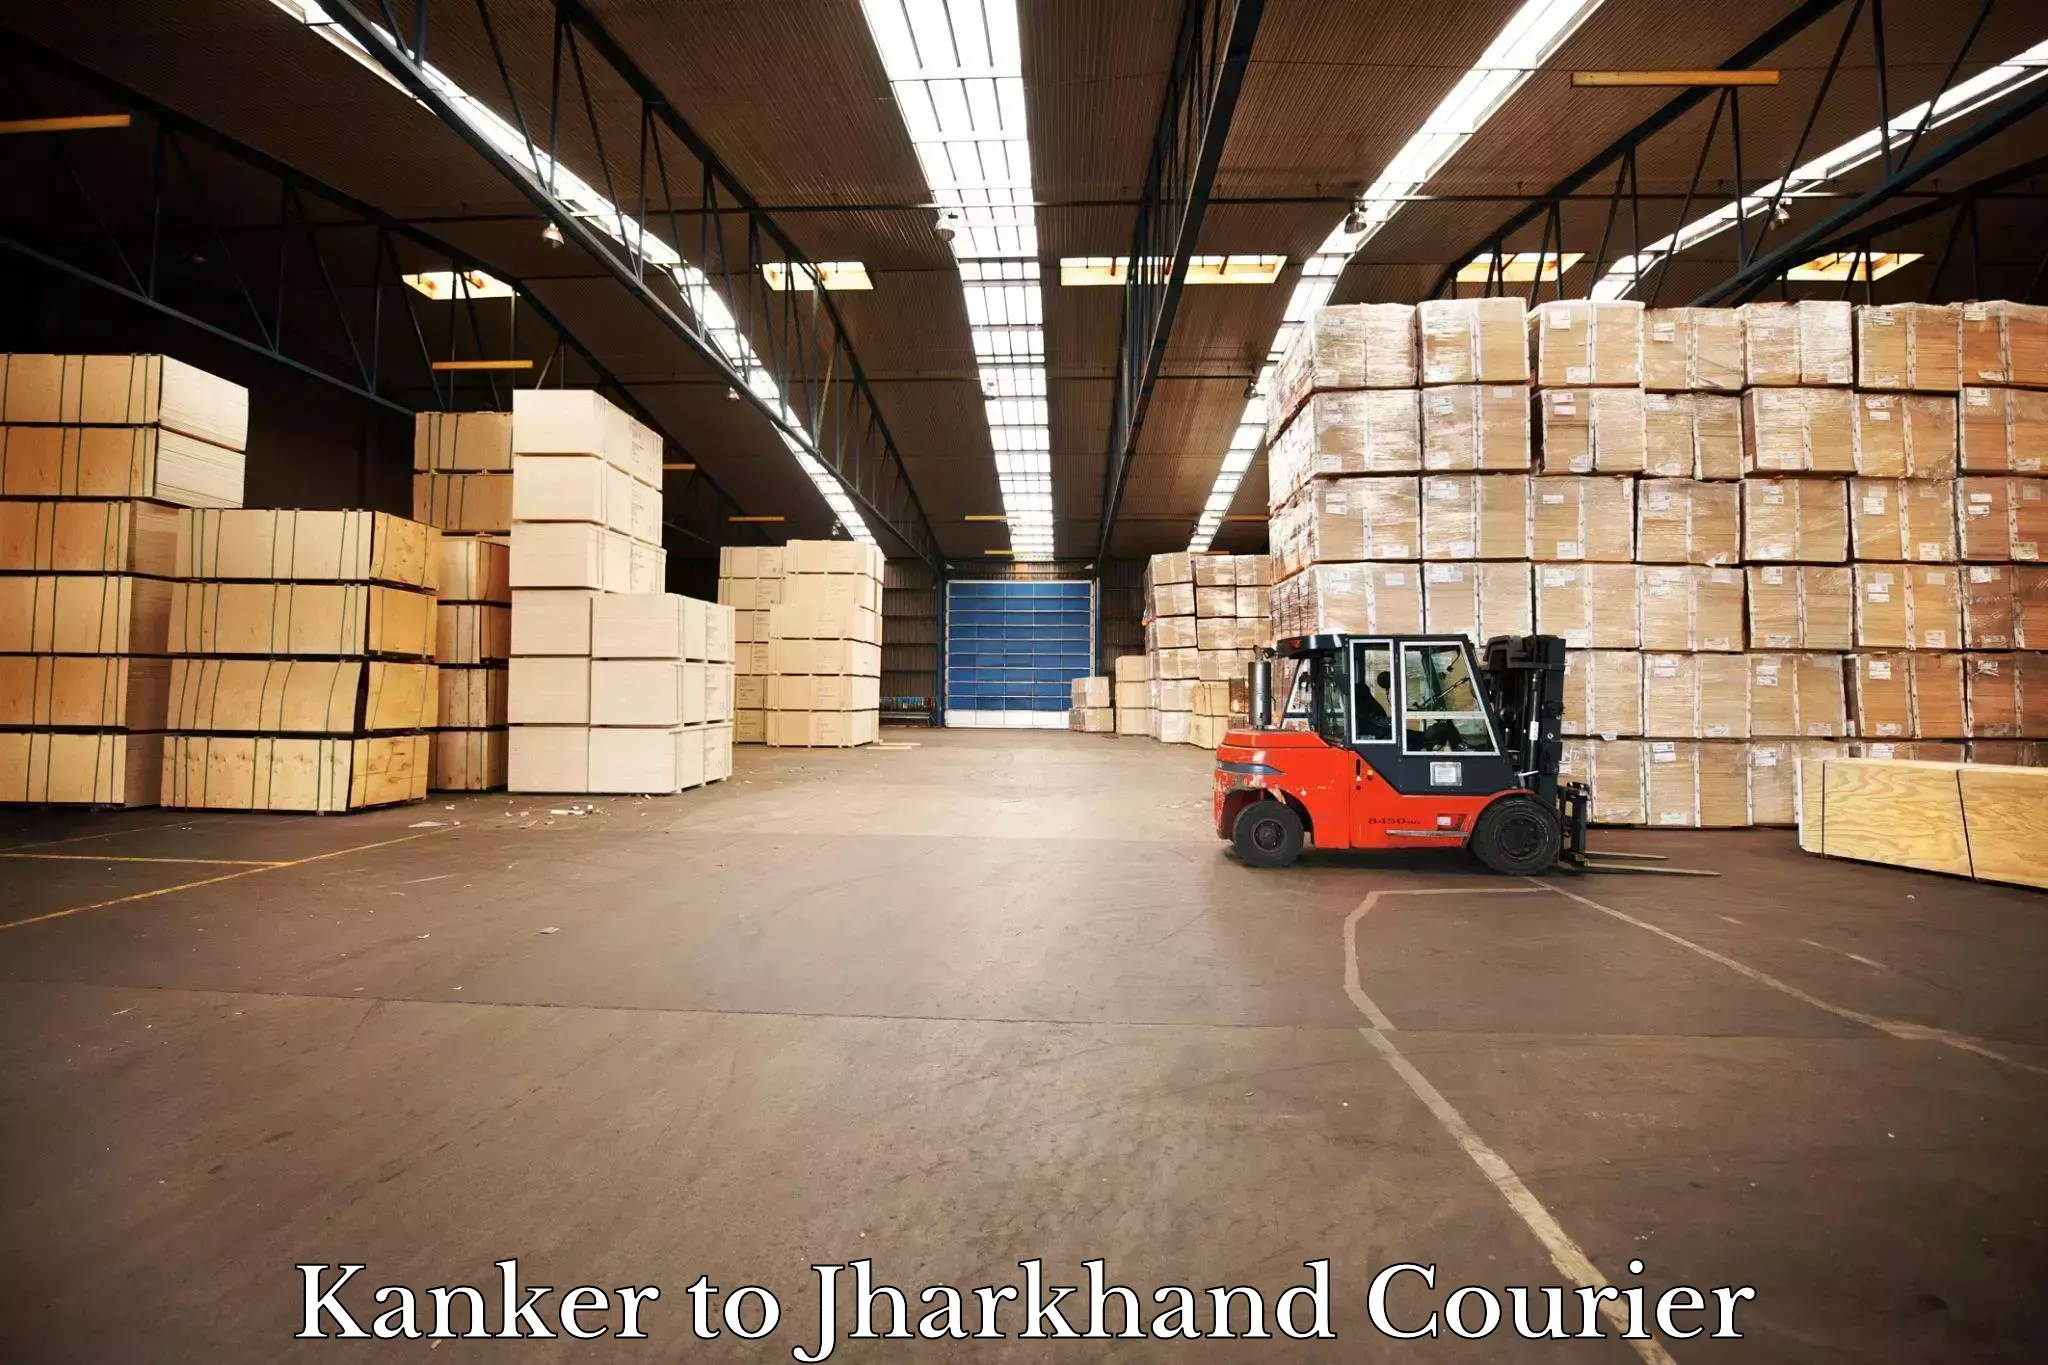 Nationwide parcel services Kanker to Kedla